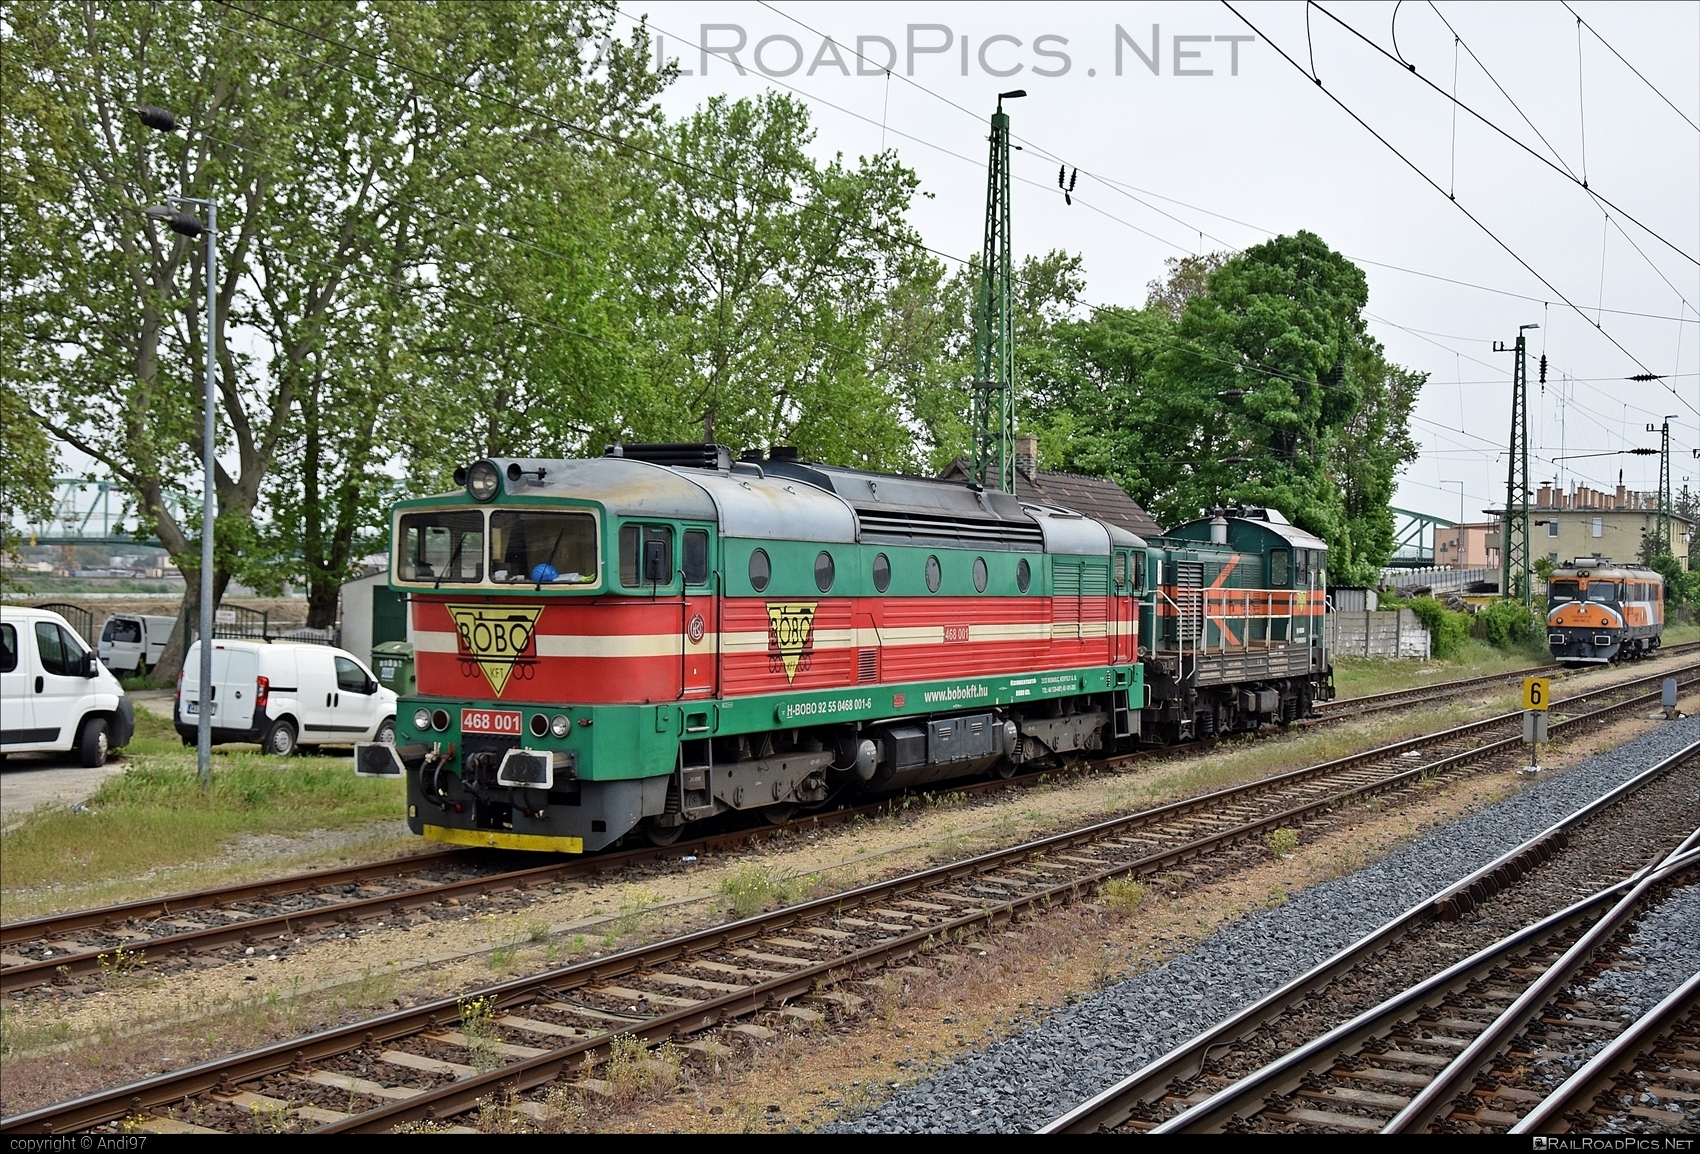 ČKD T 478.3 (753) - 468 001 operated by BOBO Járműjavító, Ipari, Kereskedelmi és Szolgáltató Kft. #bobo #brejlovec #ckd #ckdclass753 #ckdt4783 #locomotive753 #okuliarnik